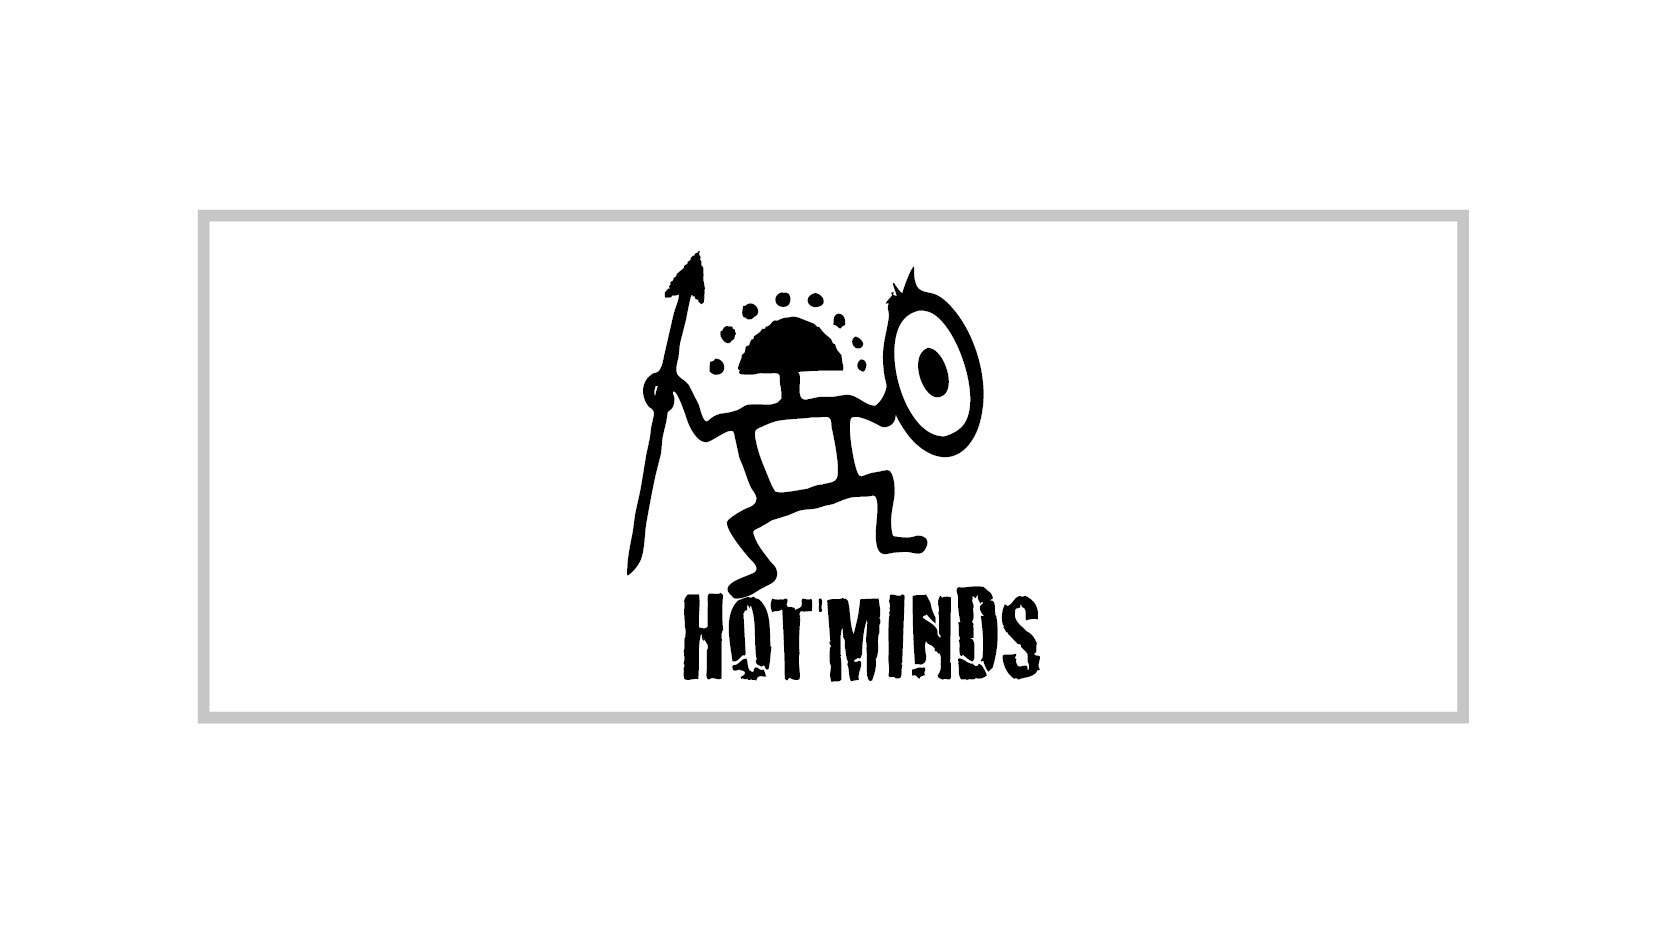 HOTMIND-logo